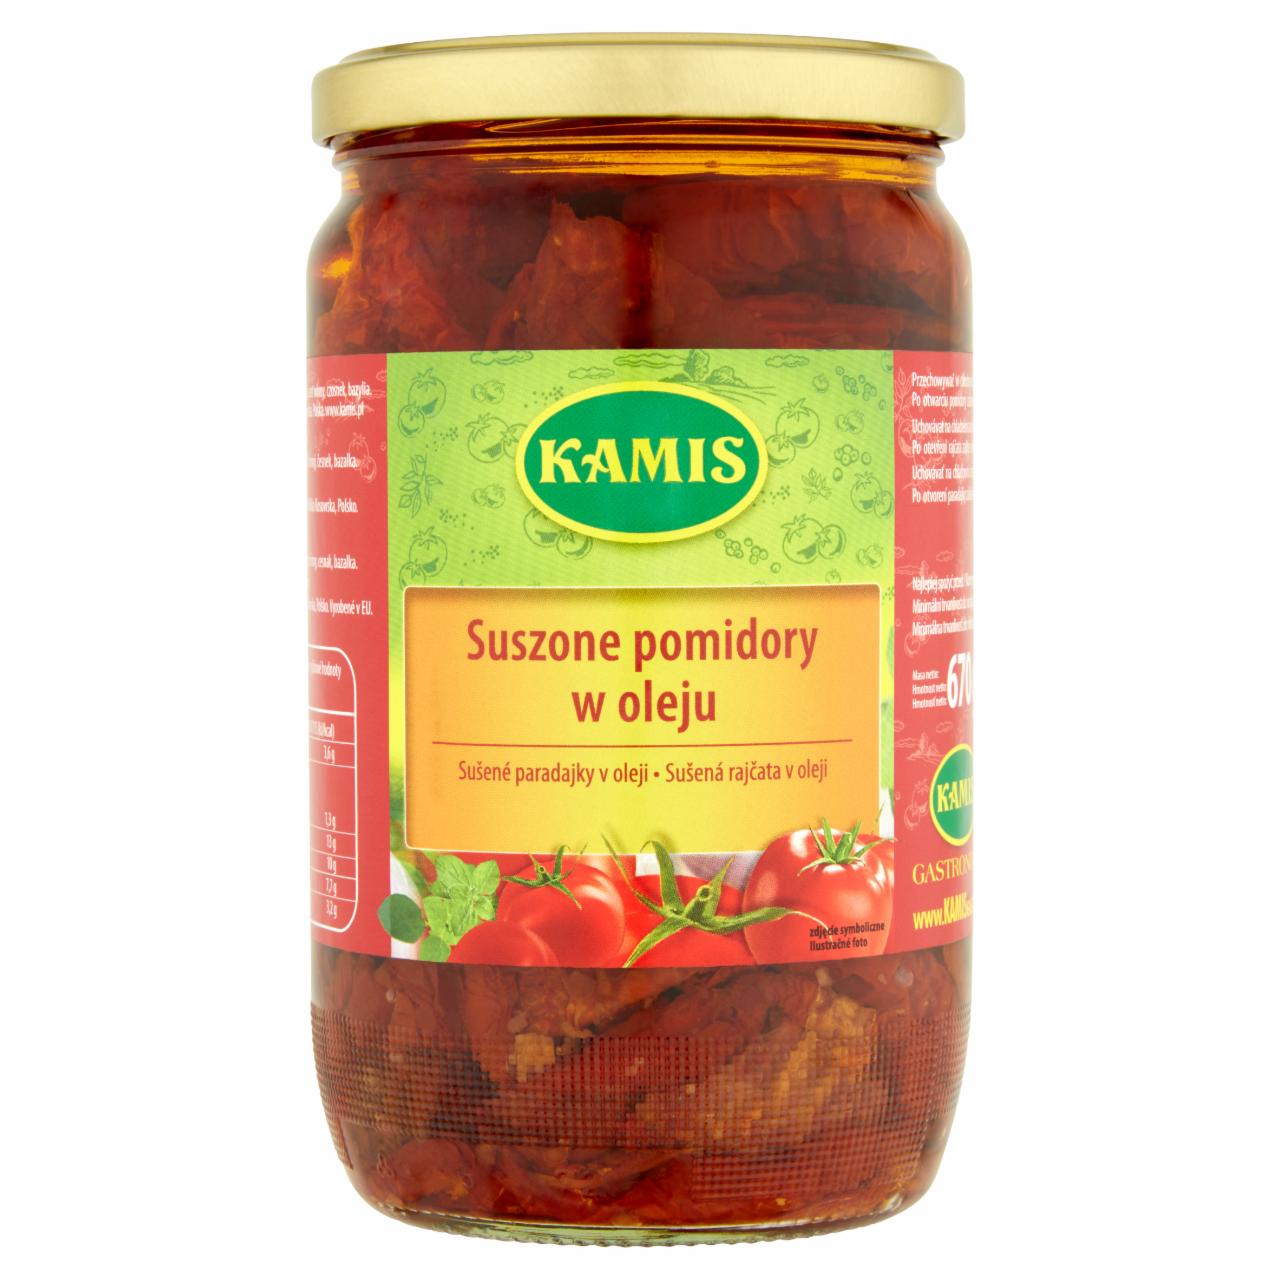 Zdjęcia - Kamis Gastronomia Suszone pomidory w oleju